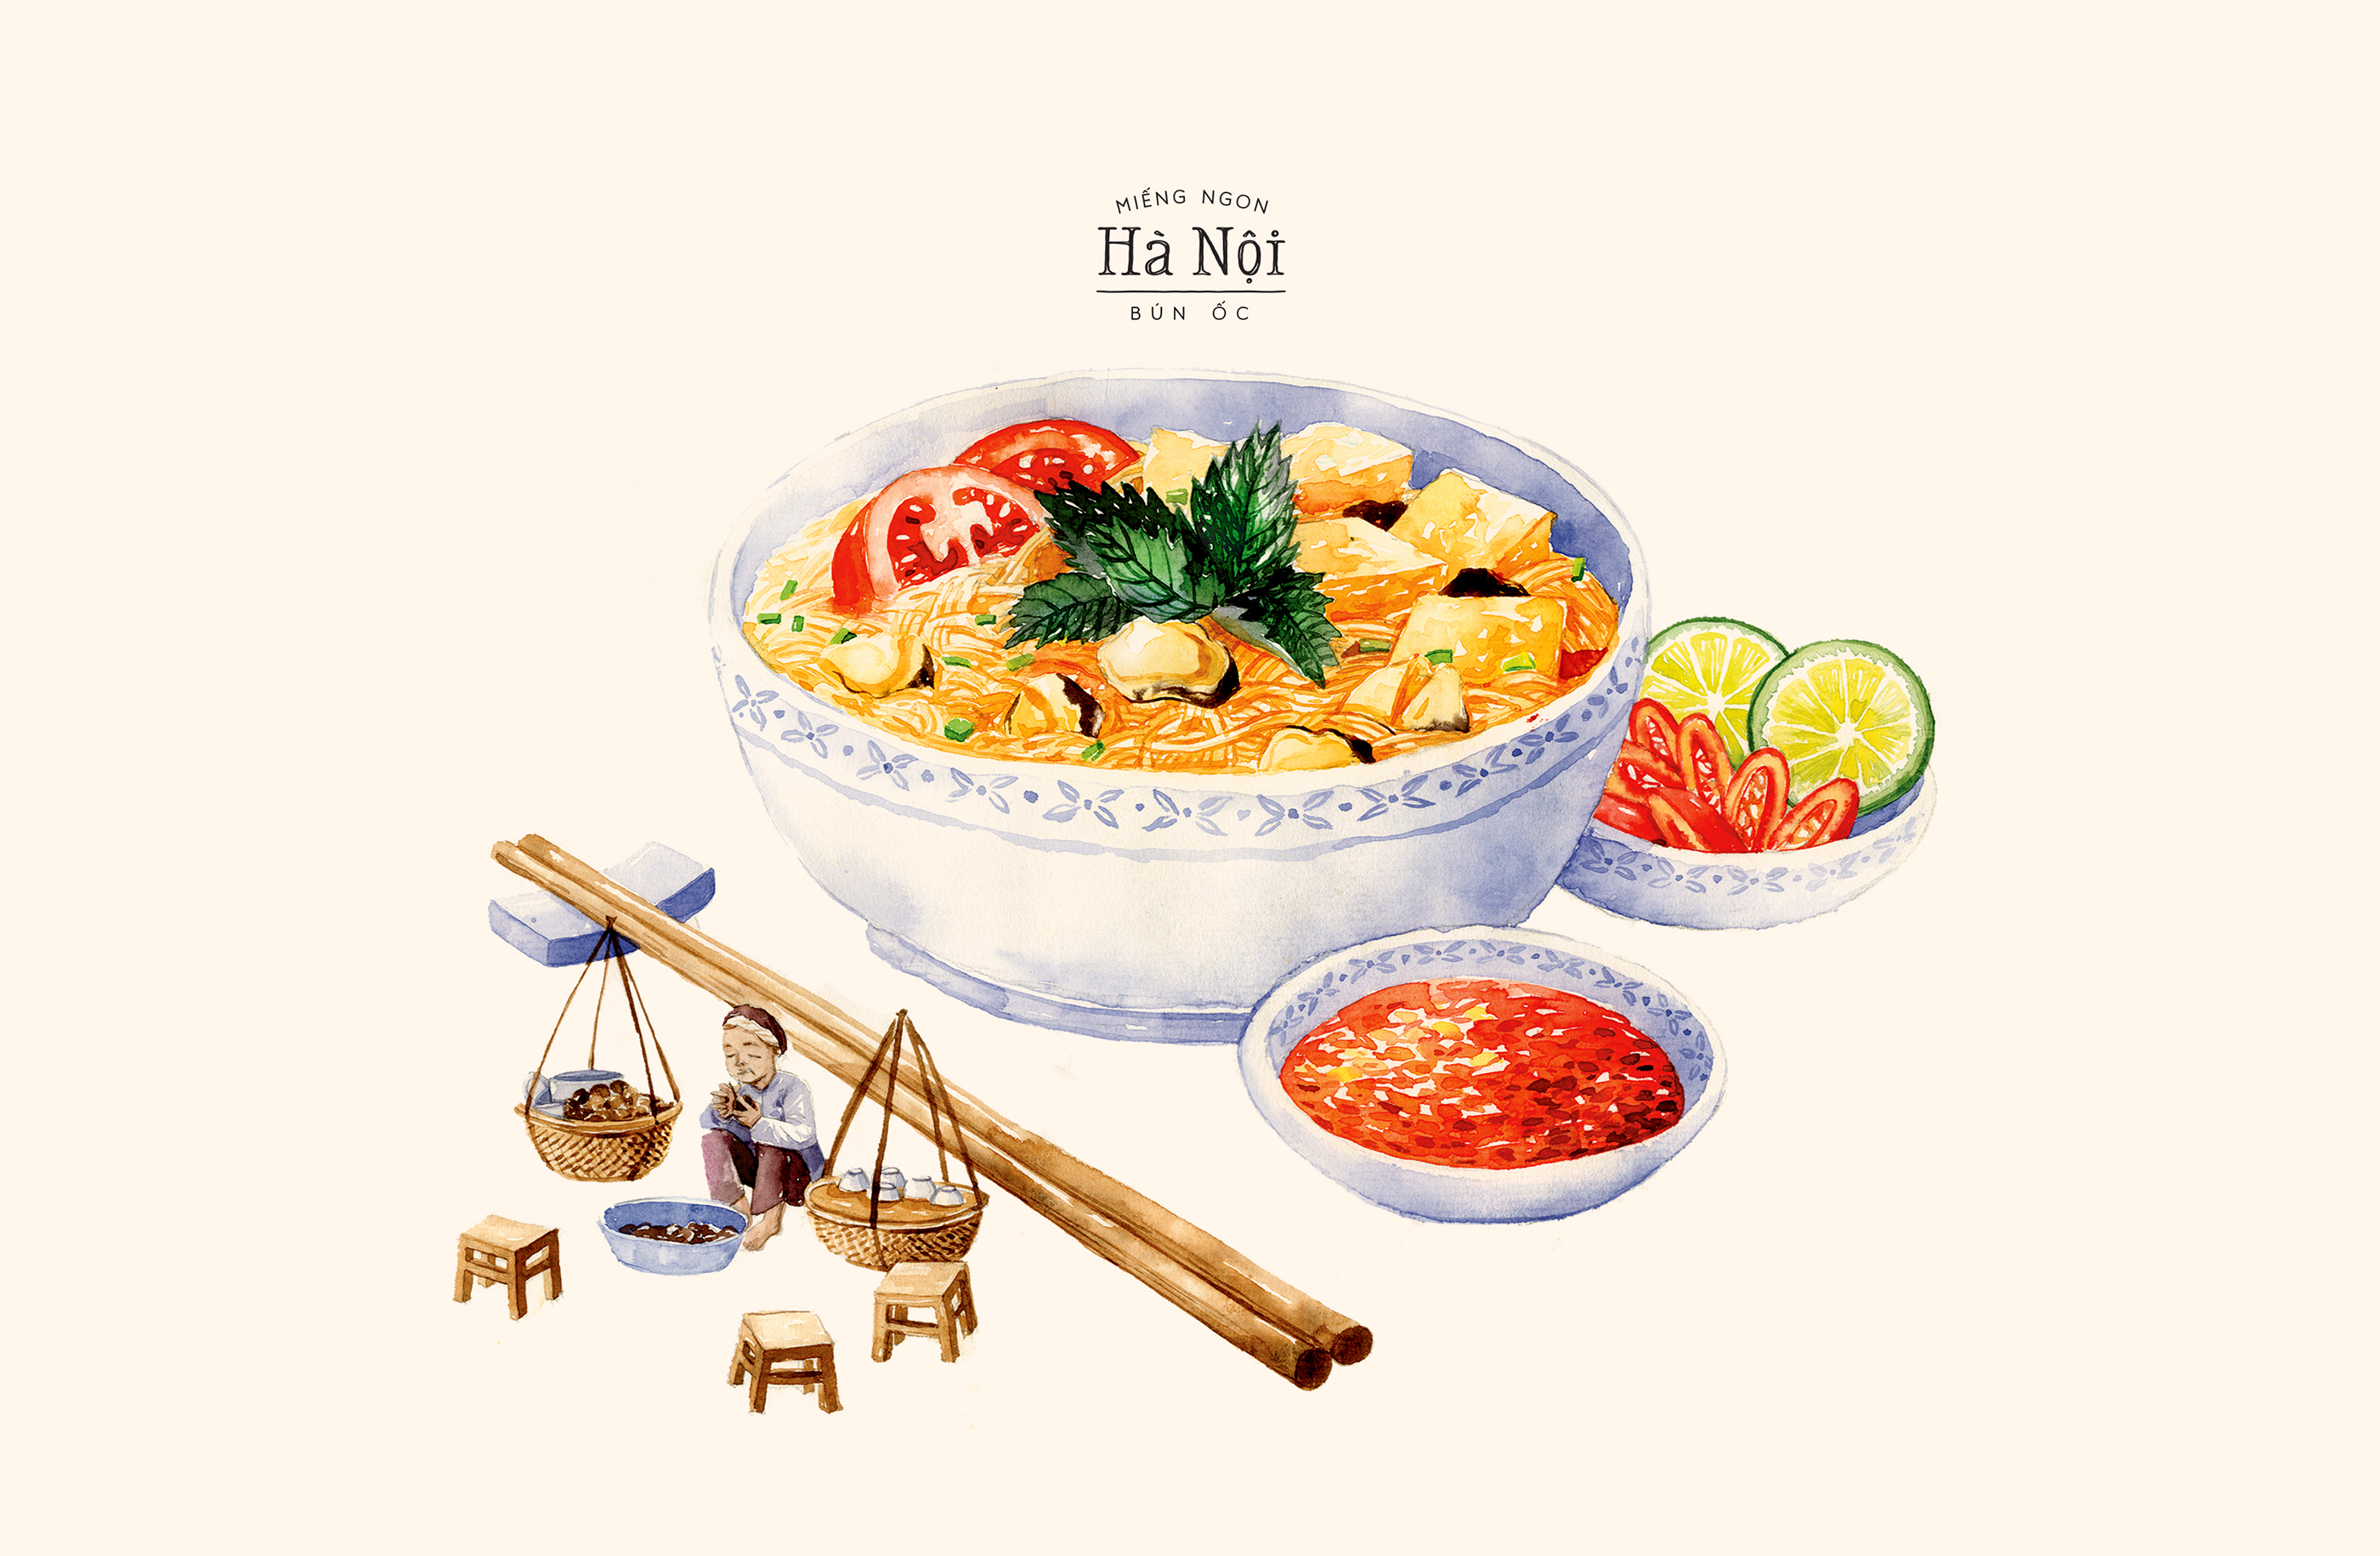 Idesign | A Taste Of Hanoi Truyền Tải Phong Cách Ẩm Thực Việt Qua Màu Nước  Mộc Mạc